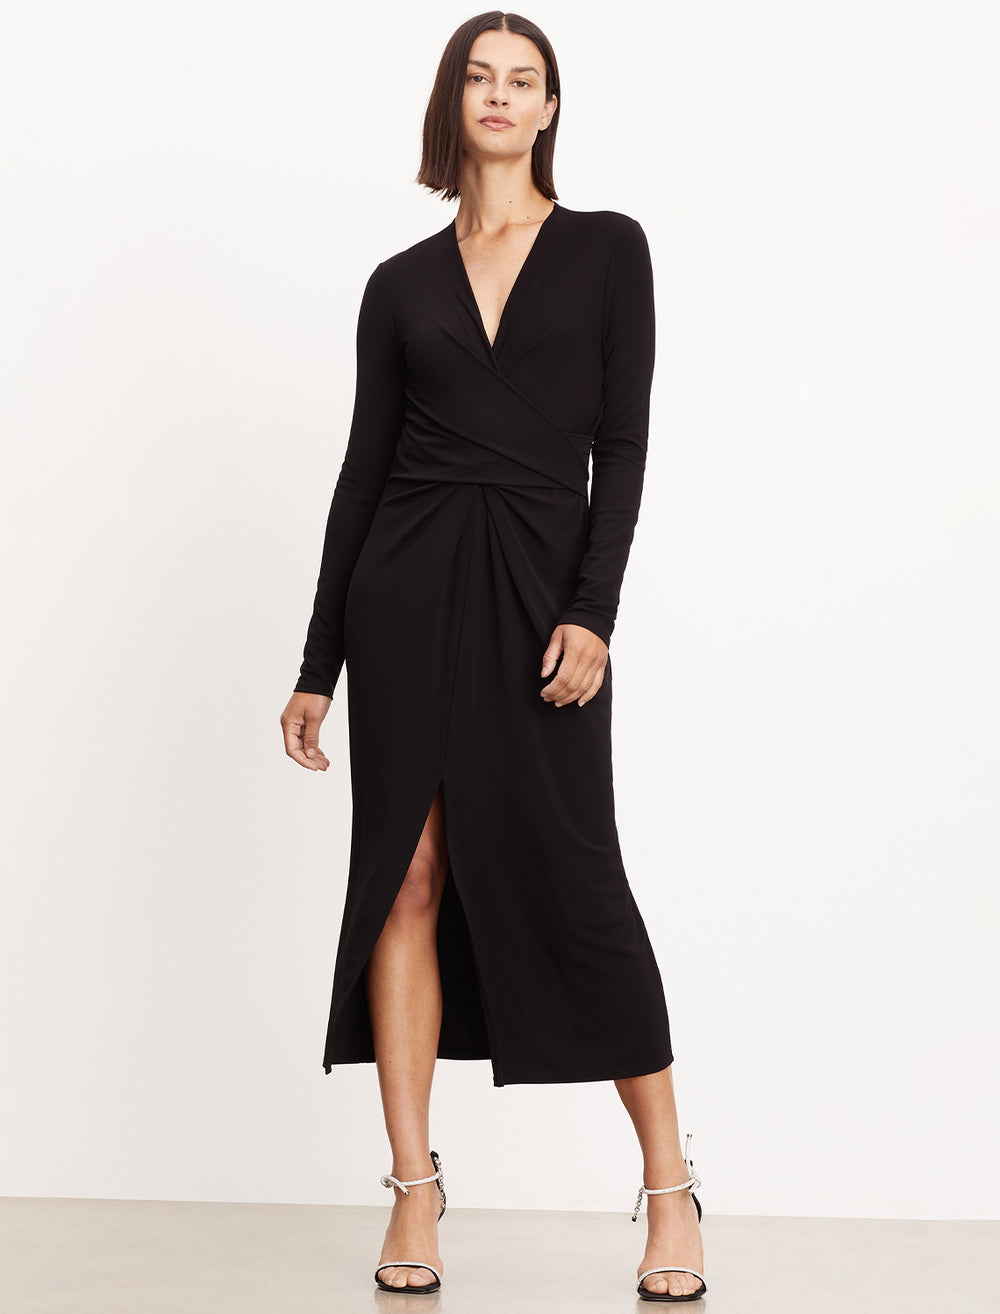 Model wearing Velvet by Graham & Spencer's Eliana Dress in Black Matte Jersey.